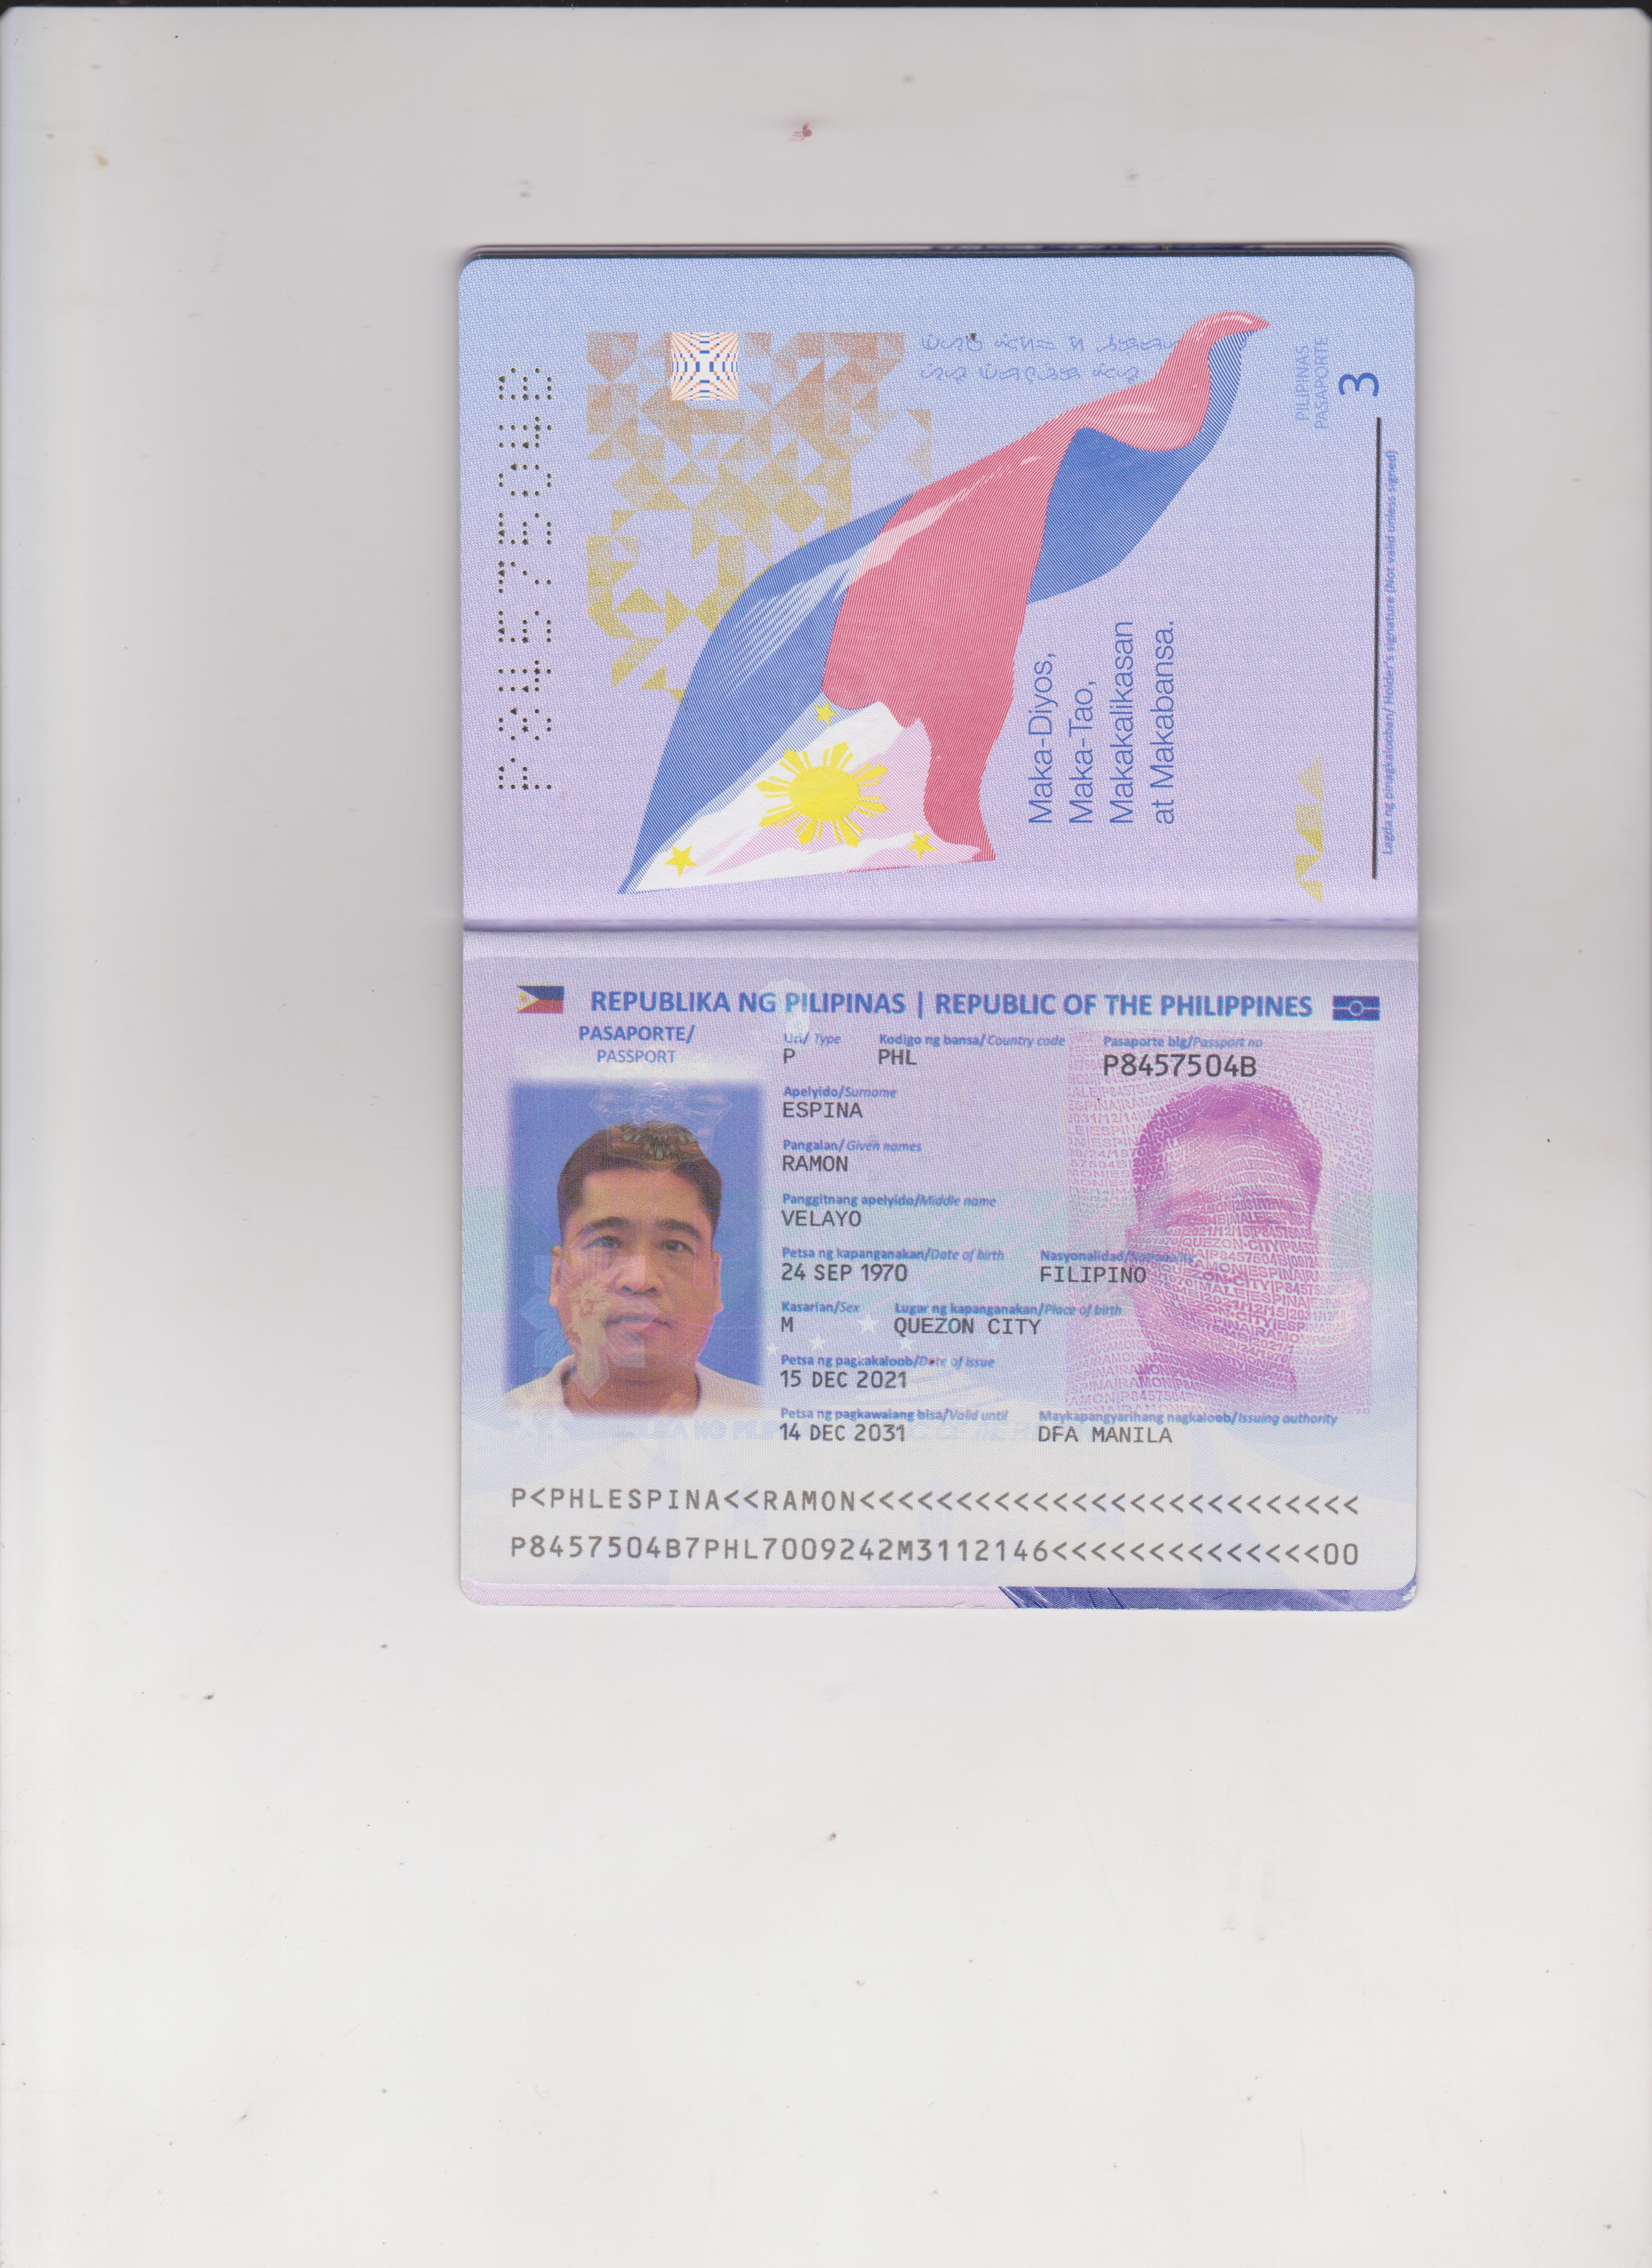 PILIPINAS
_ PASAPORTE ~~

 

   

Maka-Diyos, —
Maka-Tao,
Makakalikasan

Lagda ng piragiaiooban] Holder's sigratine (Not vabid unless signed)

   

SH REPUBLIKA NG PILIPINAS | REPUBLIC OF THE PHILIPPINES S58

PASAPORTE/ ed ee Kodigo ng bansa/ Country code Pasaporte blg/Passport no g

   

 

   

PASSPORT

  
 
 

name

  
  

[a —
~ VELAYO
of birth

  

Petsa ng kapanganakan/Dote
24 SEP 1970
Rasarian/Sex th
M QUEZON CIT"
Petsa ng pagiakaloob/Derx of isswe
15 DEC 2021

oe N Petsa ng pagkawatang bisa/Vold unt Meigen gaa hg Shy :
| 14 DEC 2031 DFA MANILA

  

 
  
 

P<PHLESPINA<K<KRAMON<L<KCLLLLLLLLLLLLLLLLLLLLLL
PB457504B7PHL7009242M3112146<<<<<<<<<<<<<<00